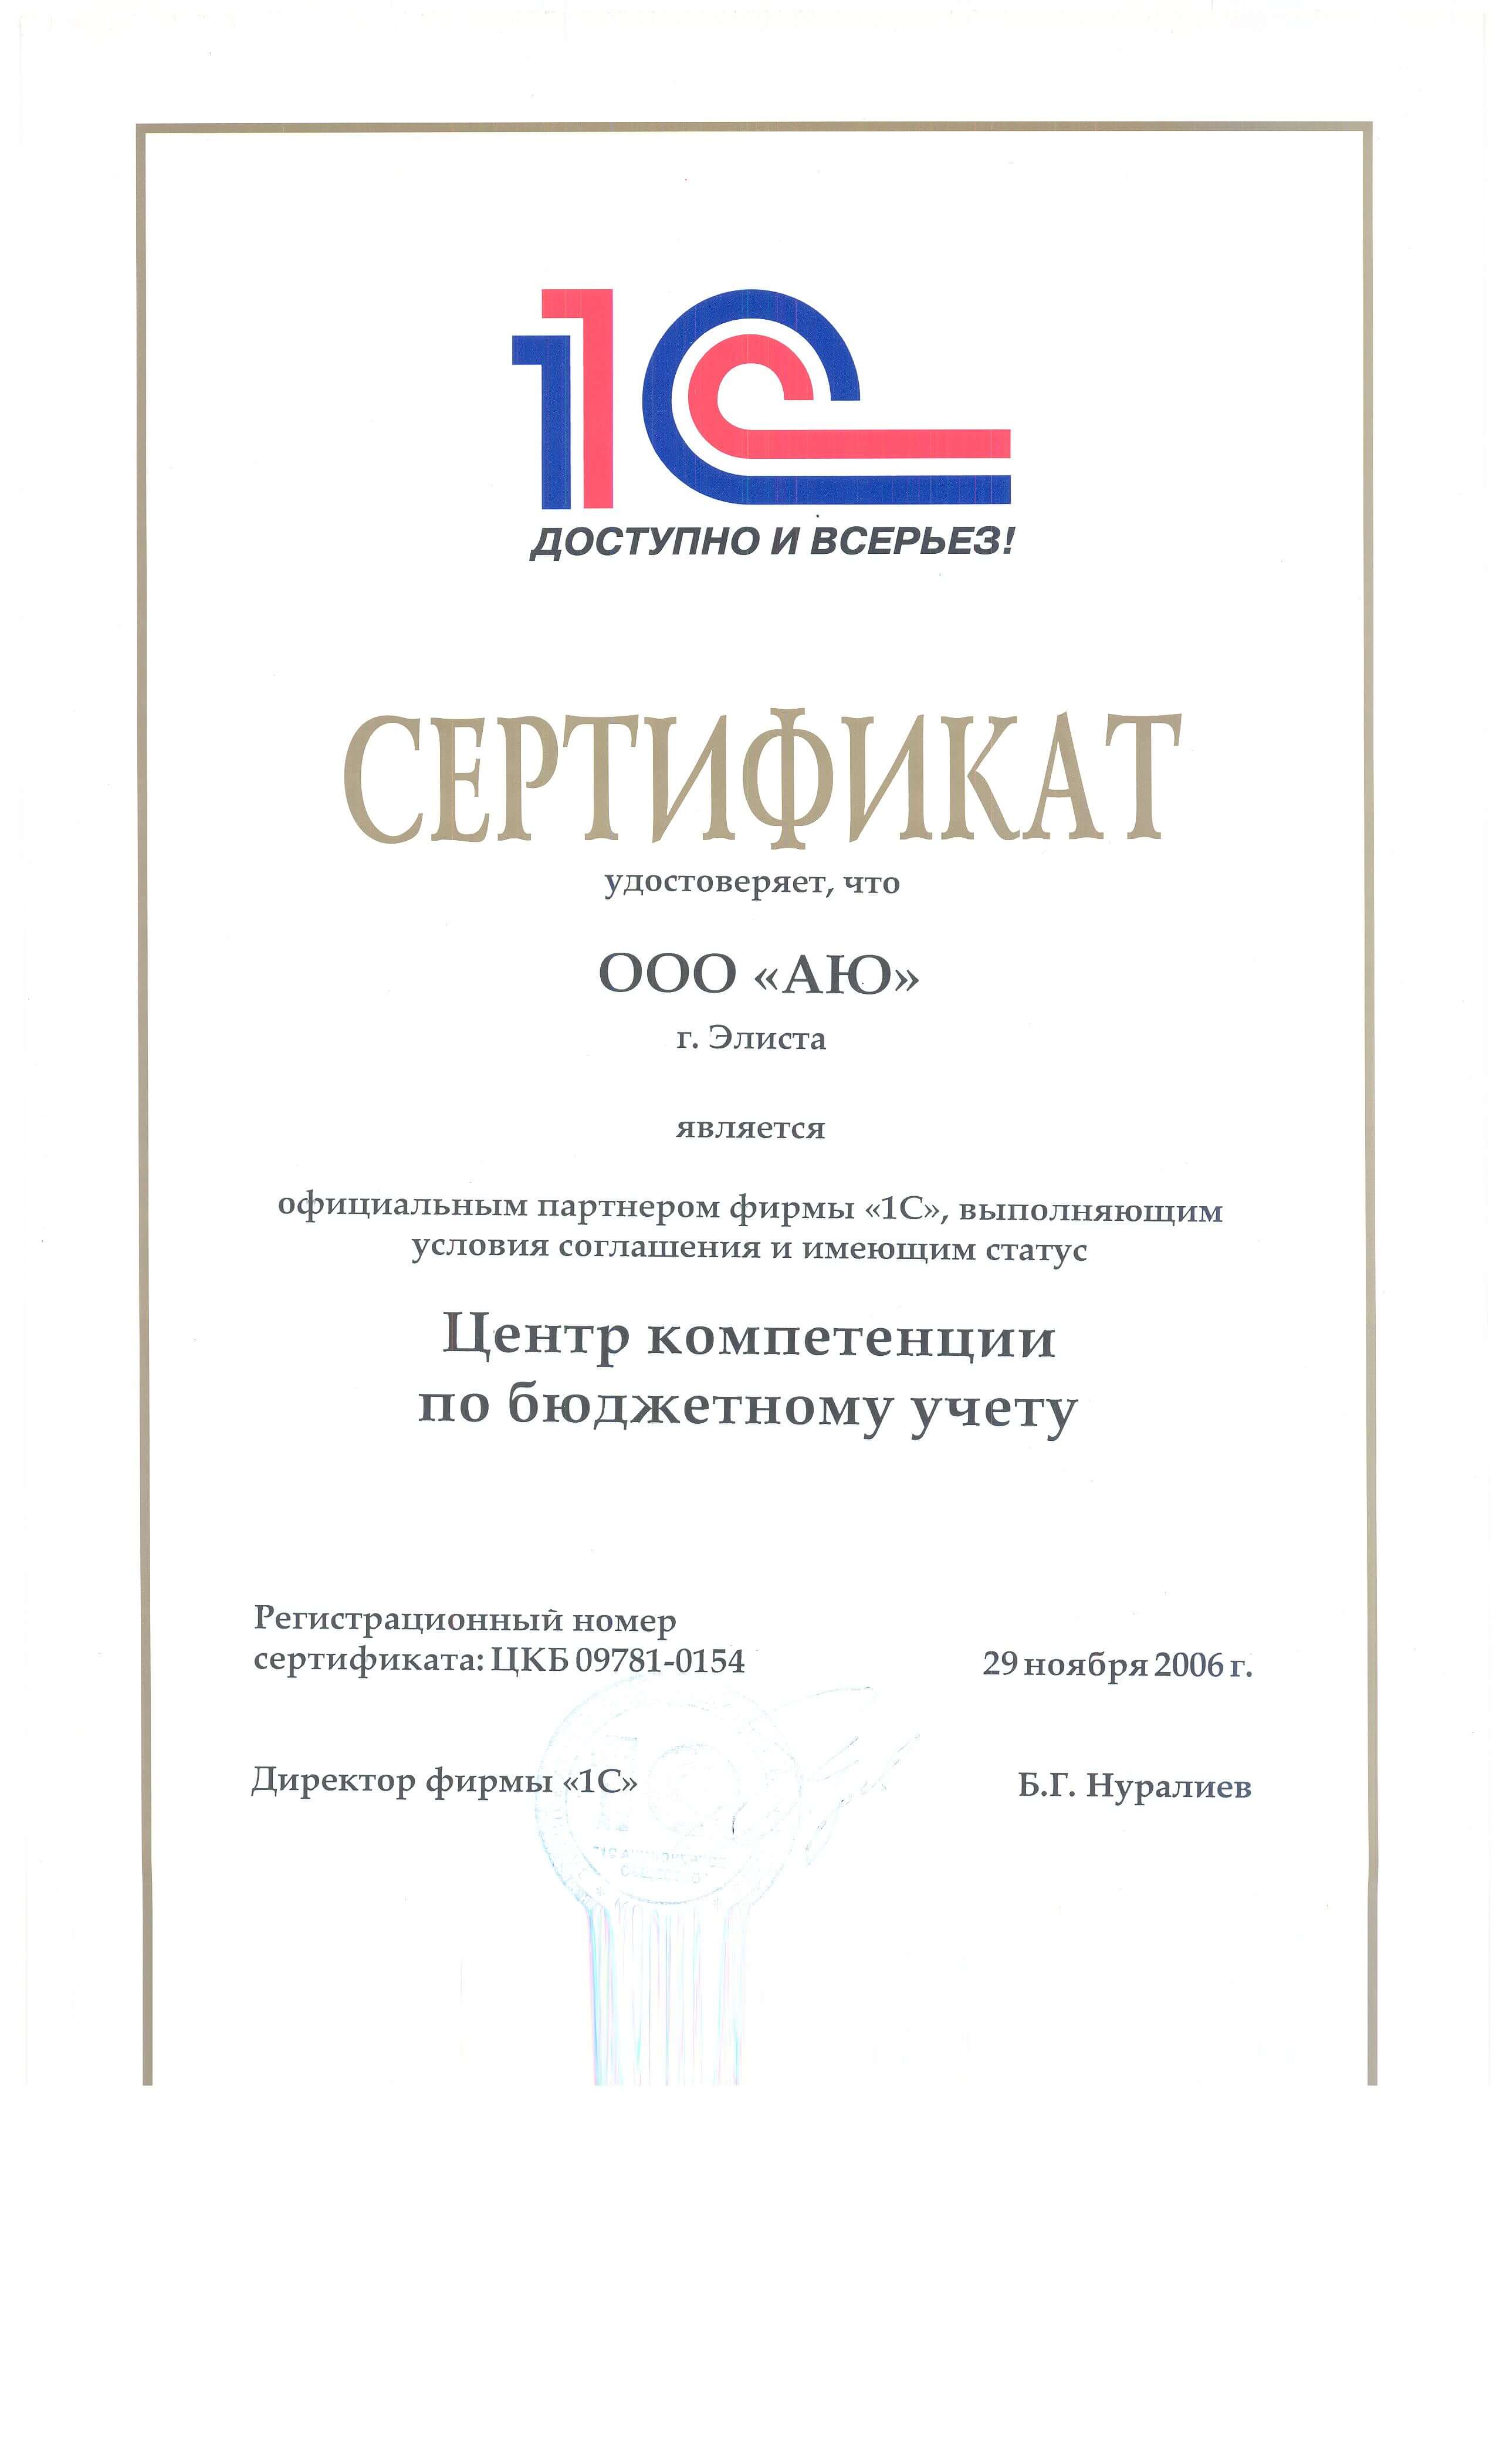 Сертификат Центра сопровождения и Центр компетенции по бюдж.учету-крупным планом